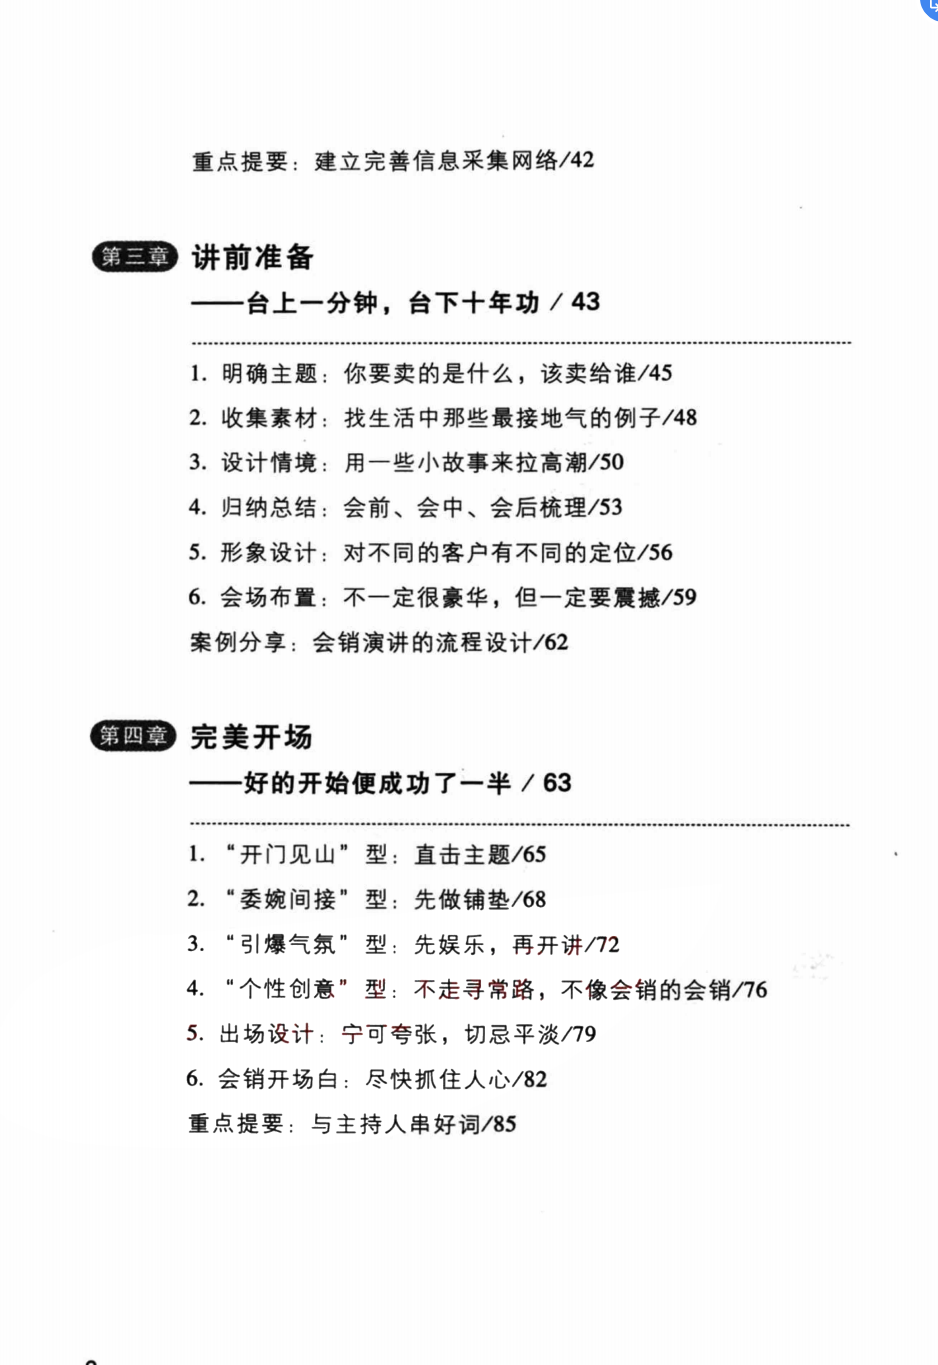 《会销为王》解密.pdf「百度网盘下载」PDF 电子书插图2